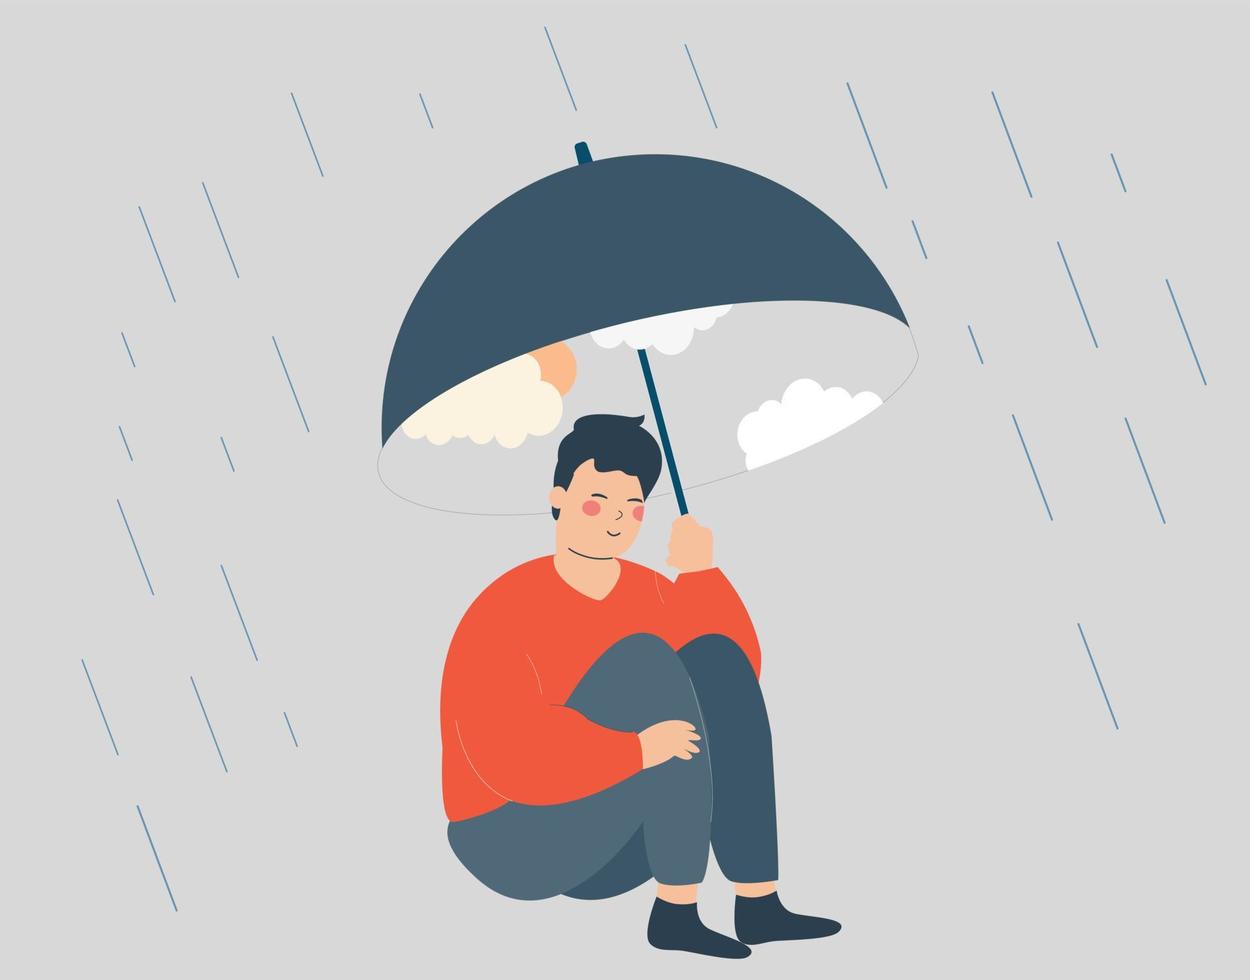 man gebruikt een paraplu met een lucht en zon om zichzelf te beschermen tegen de regen en ziet er gelukkig en ontspannen uit. innerlijke wereld en verbetering van de geestelijke gezondheid concept. vector illustratie